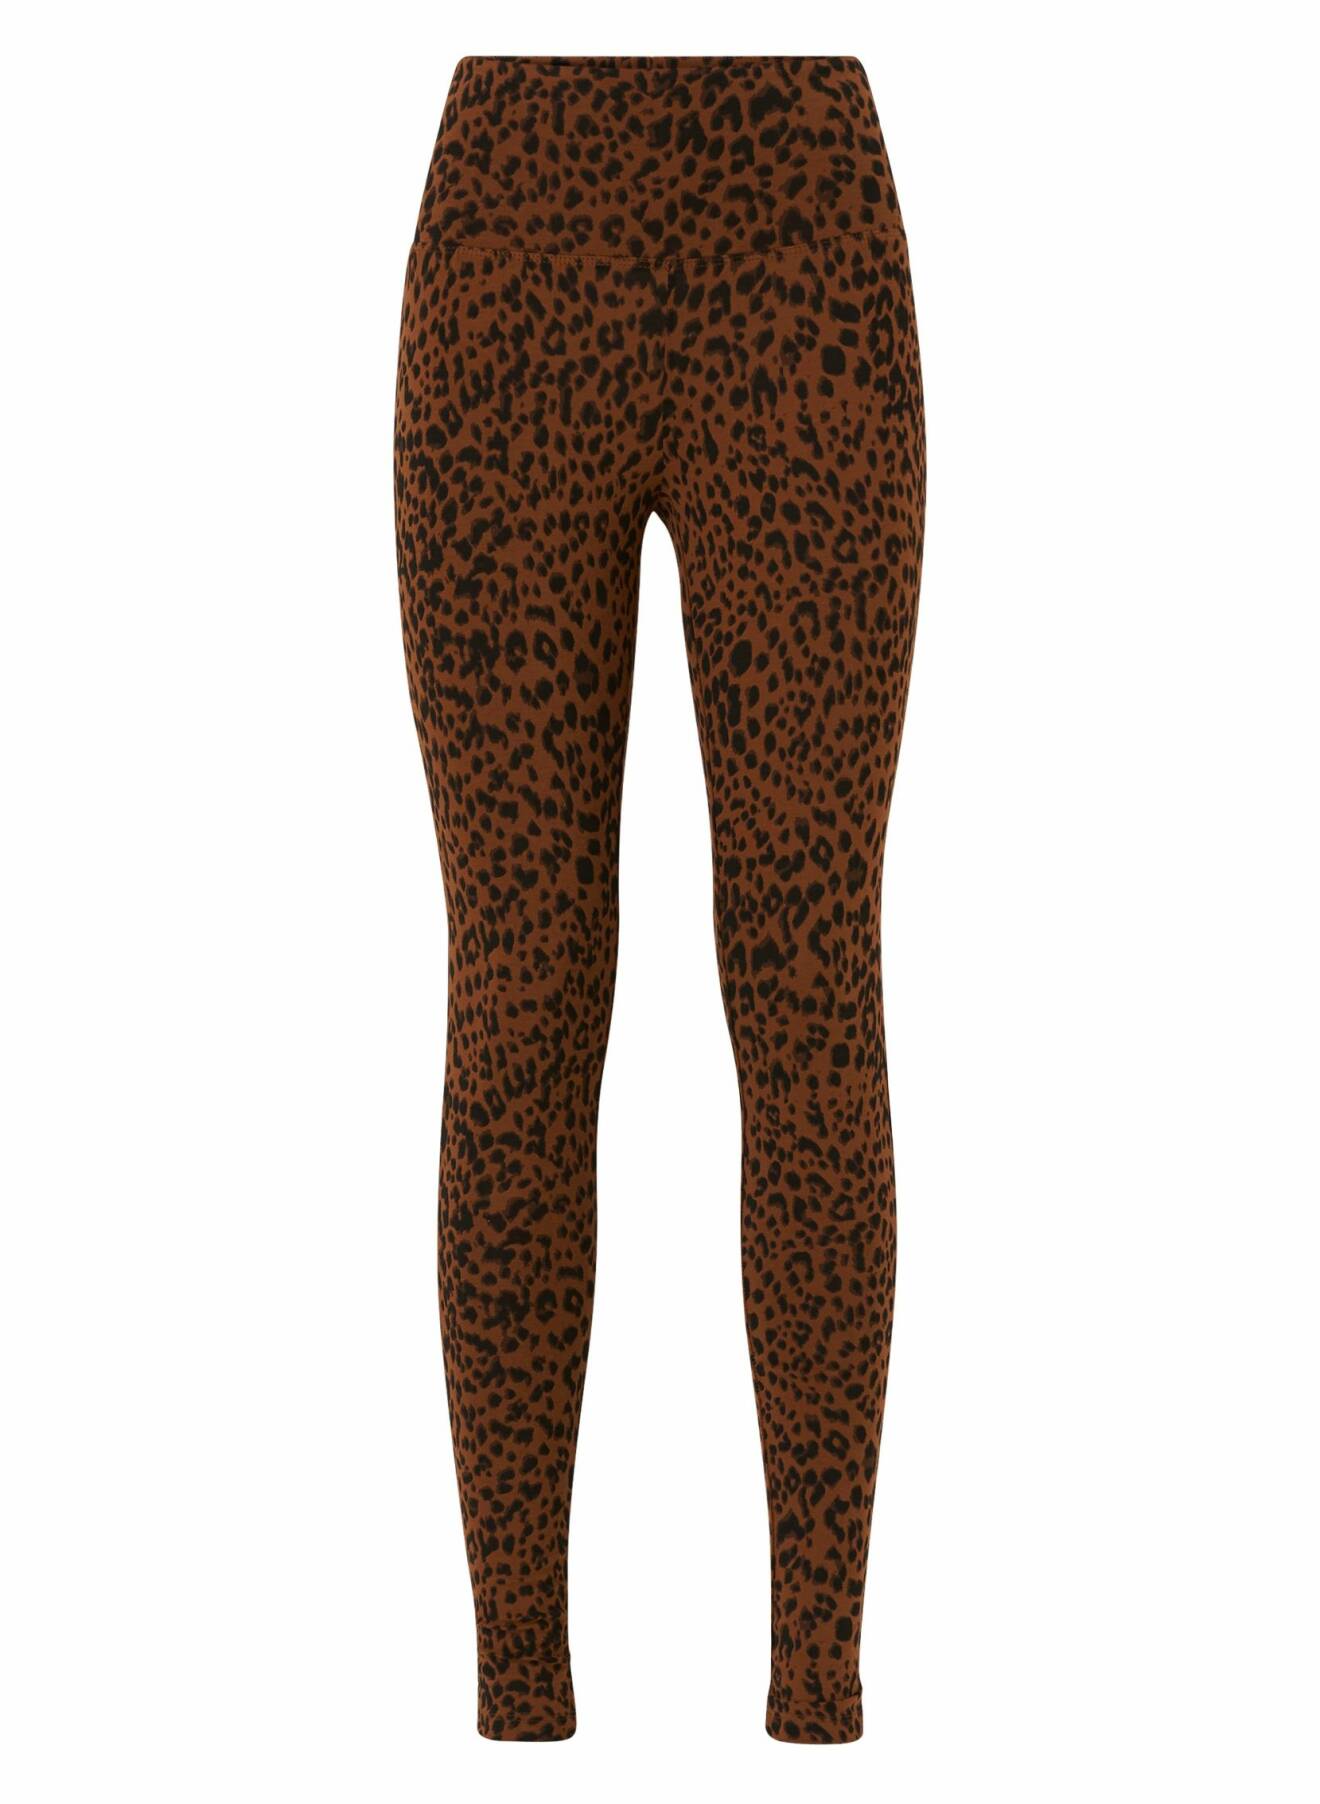 Leopardmönstrade leggings.